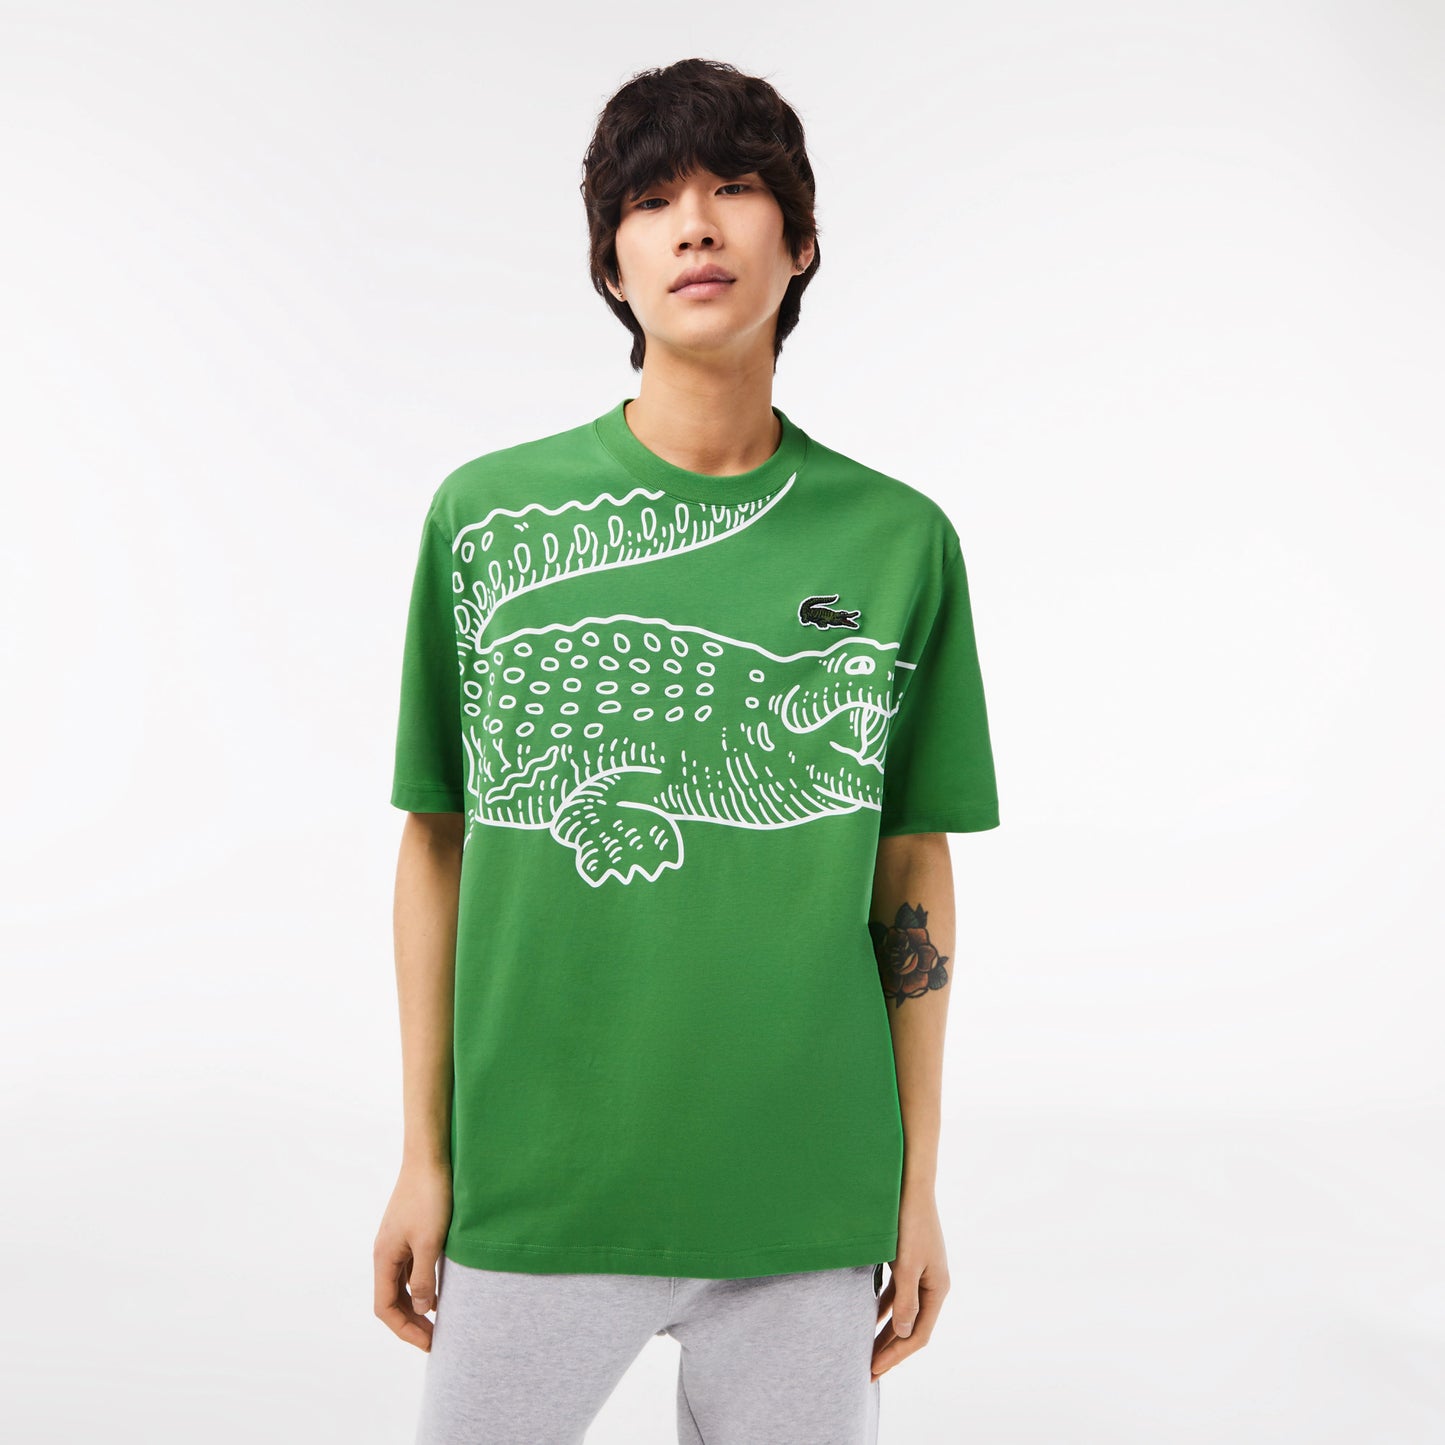 LACOSTE Men’s Crew Neck Loose Fit Crocodile Print T-Shirt